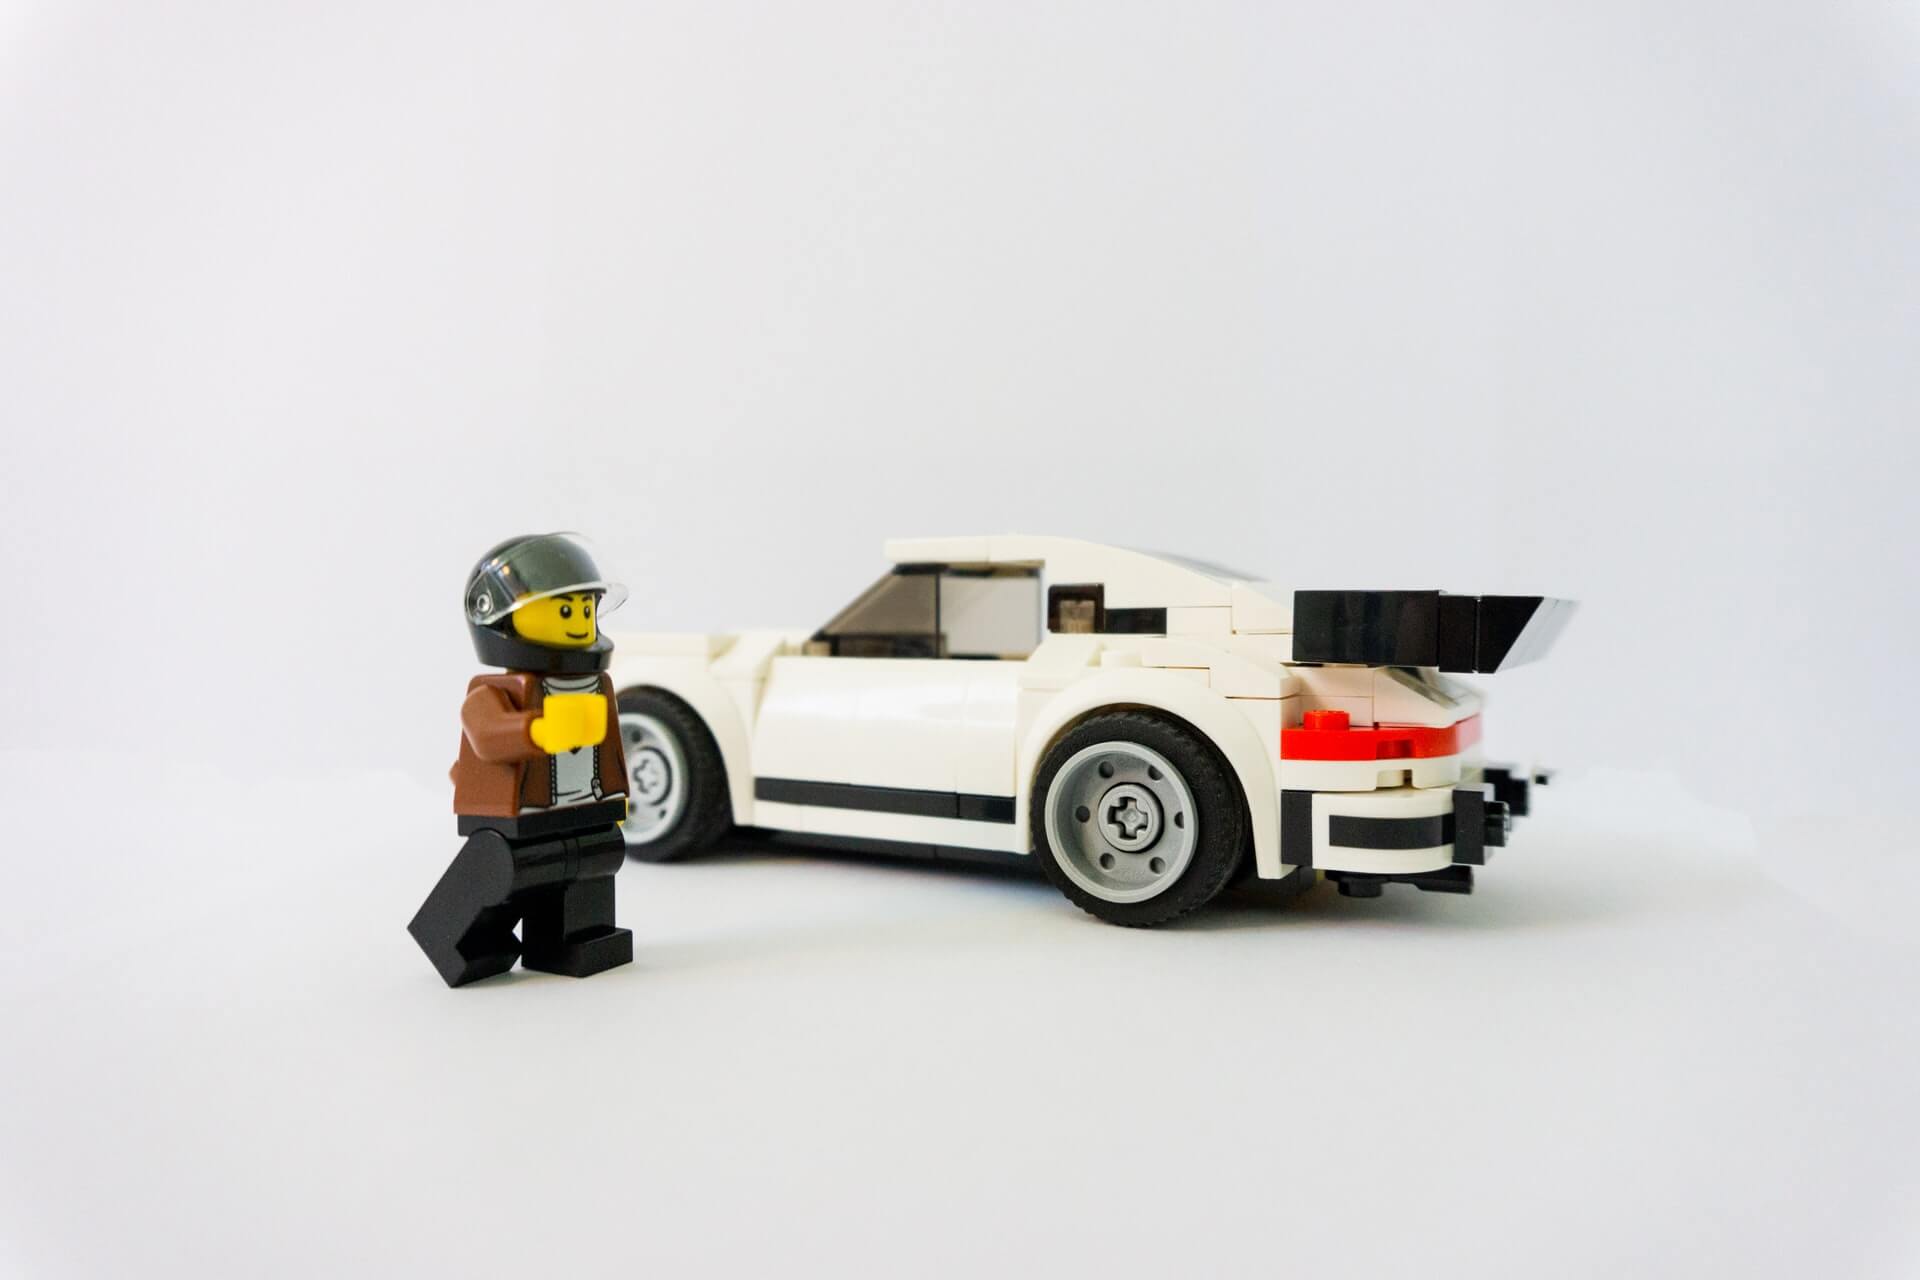 LEGO car by Eric & Niklas on Unsplash